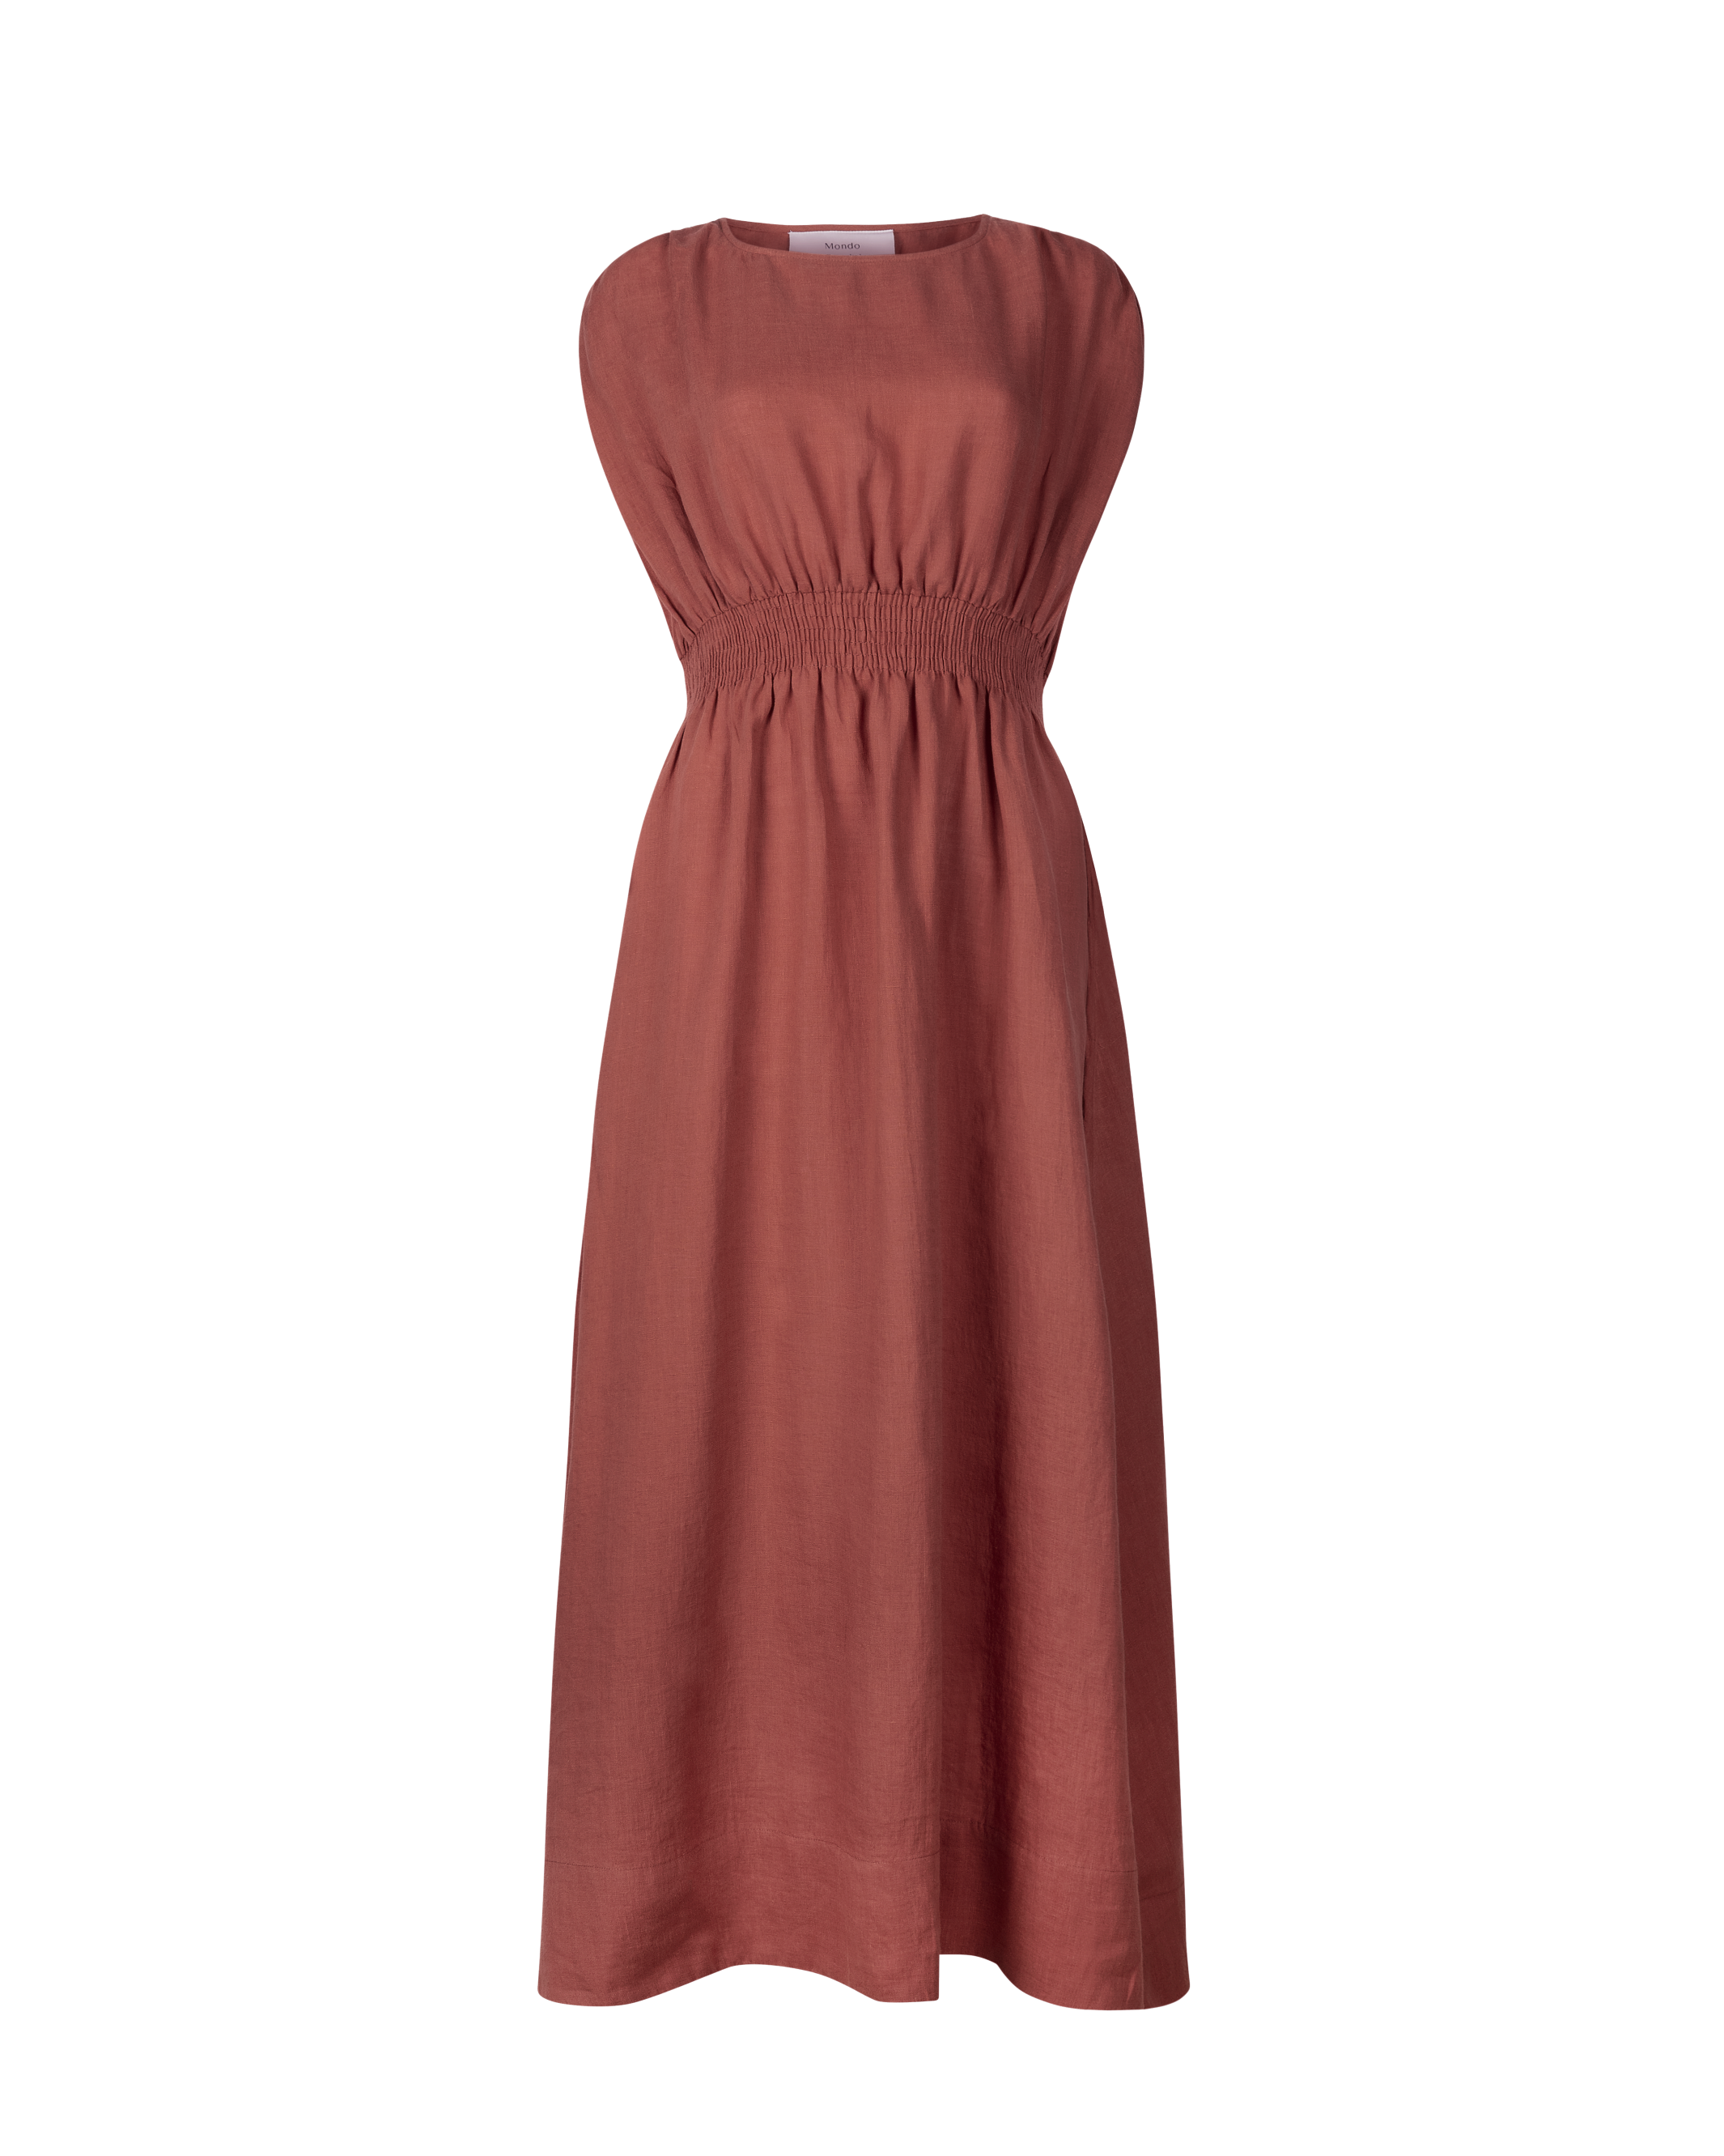 SOFIA - Brick Linen Dress - Mondo Corsini